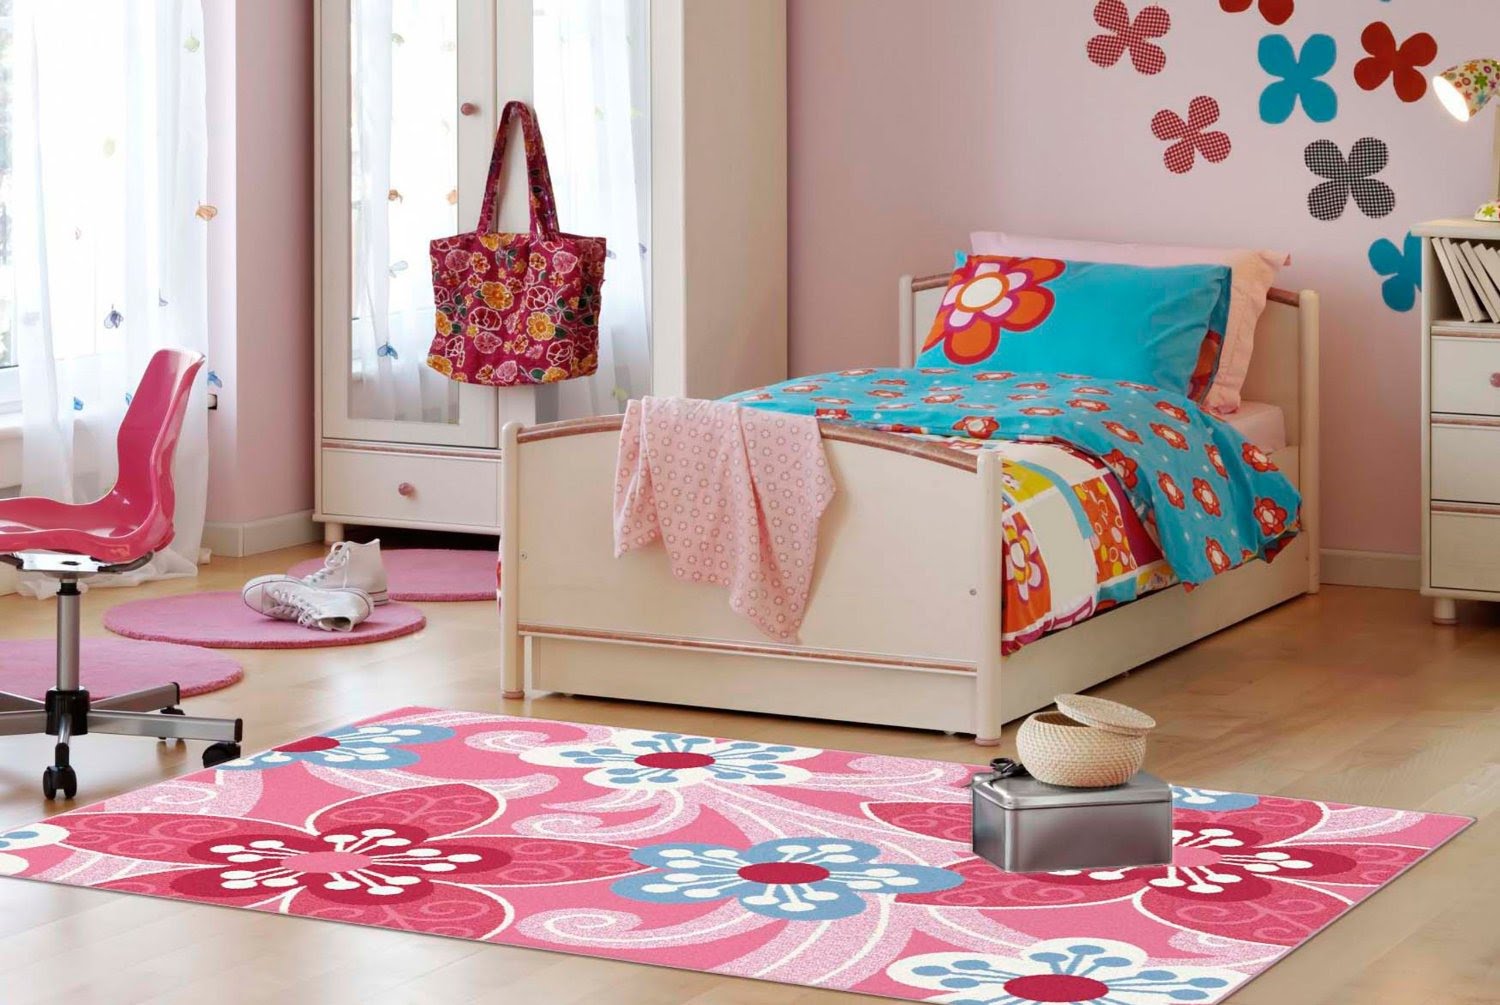 bedroom mats bedroom rugs | bedroom rugs and mats INKJSZW